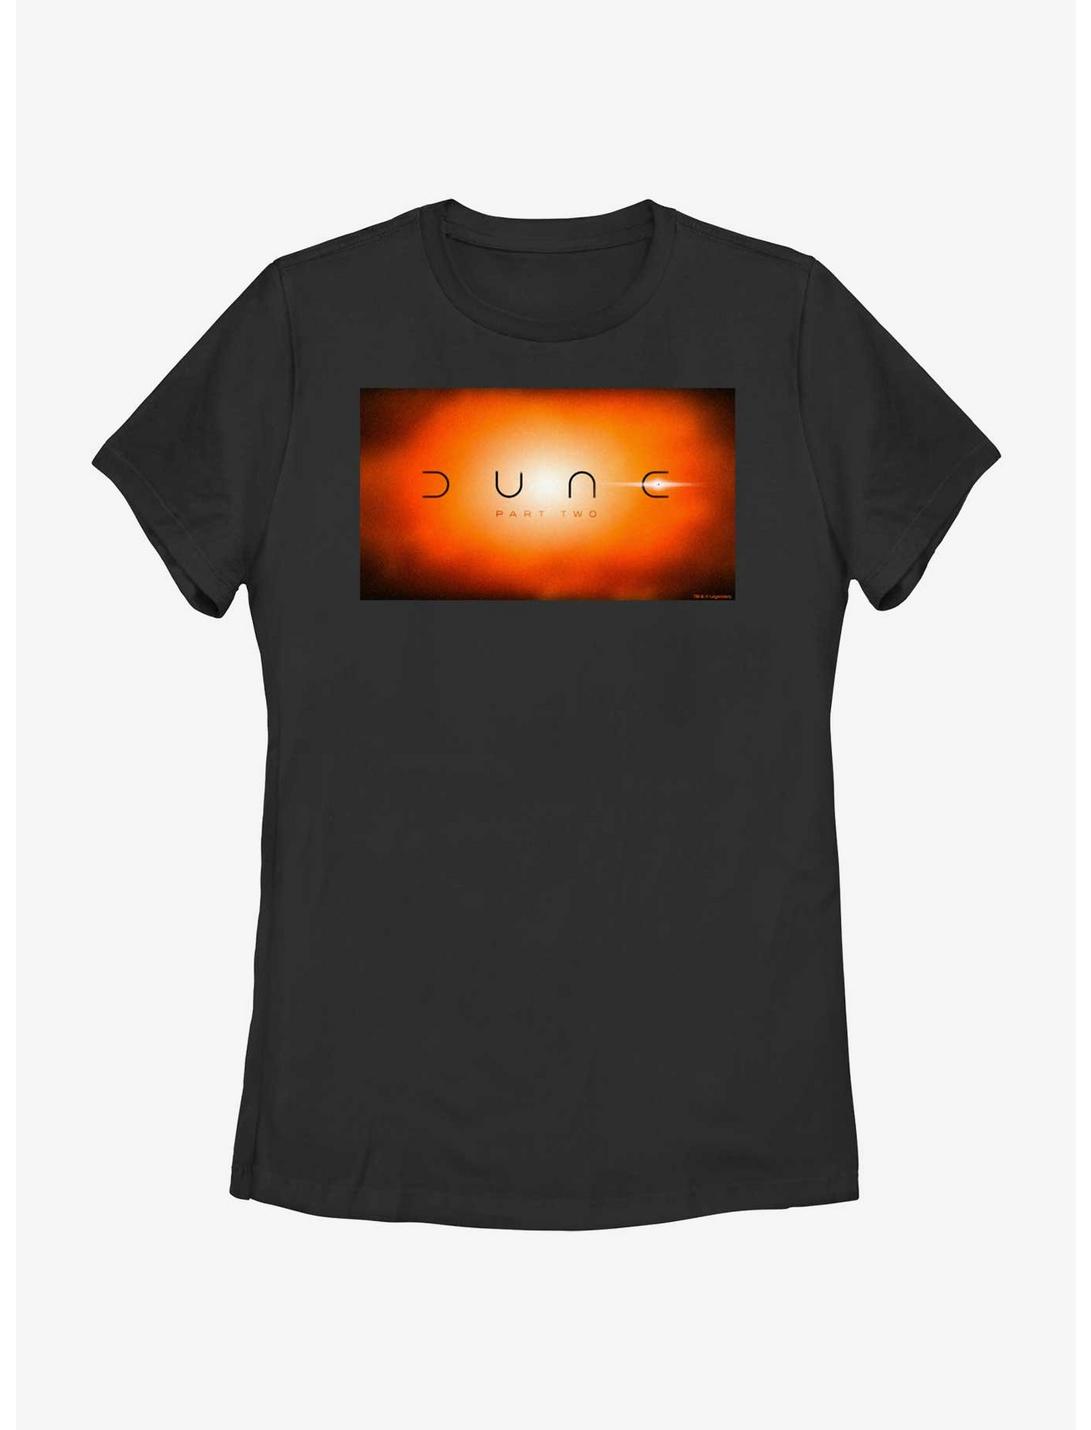 Dune: Part Two Eclipse Womens T-Shirt, BLACK, hi-res